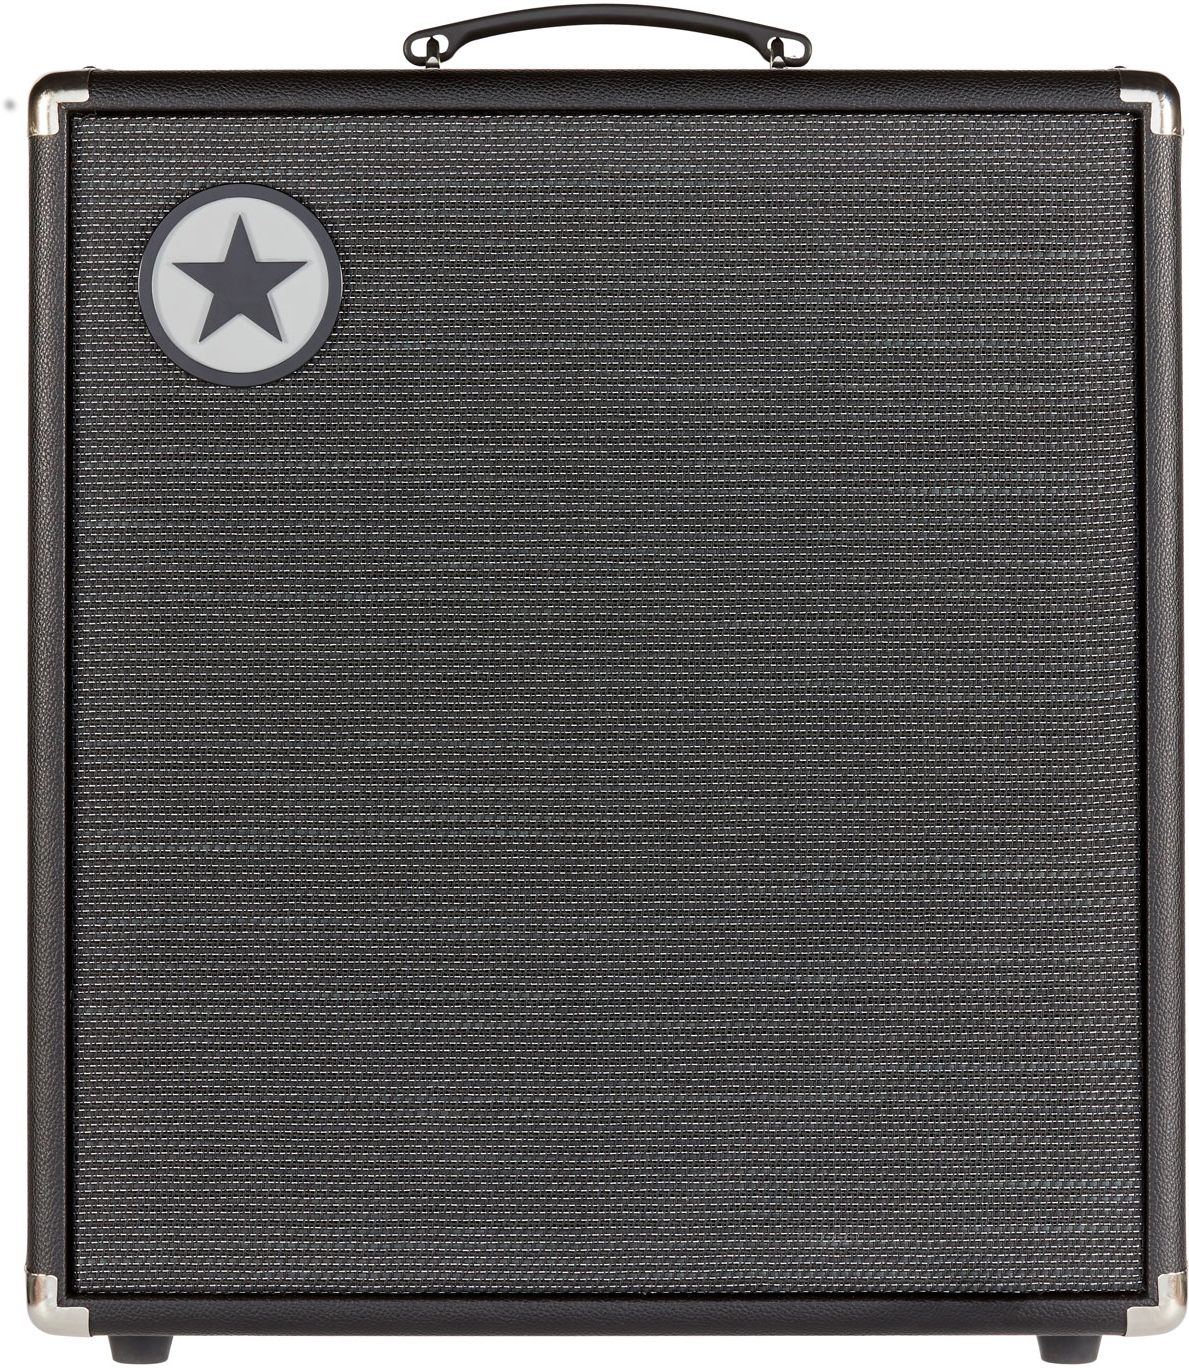 Blackstar Unity 250 - Combo amplificador para bajo - Variation 3